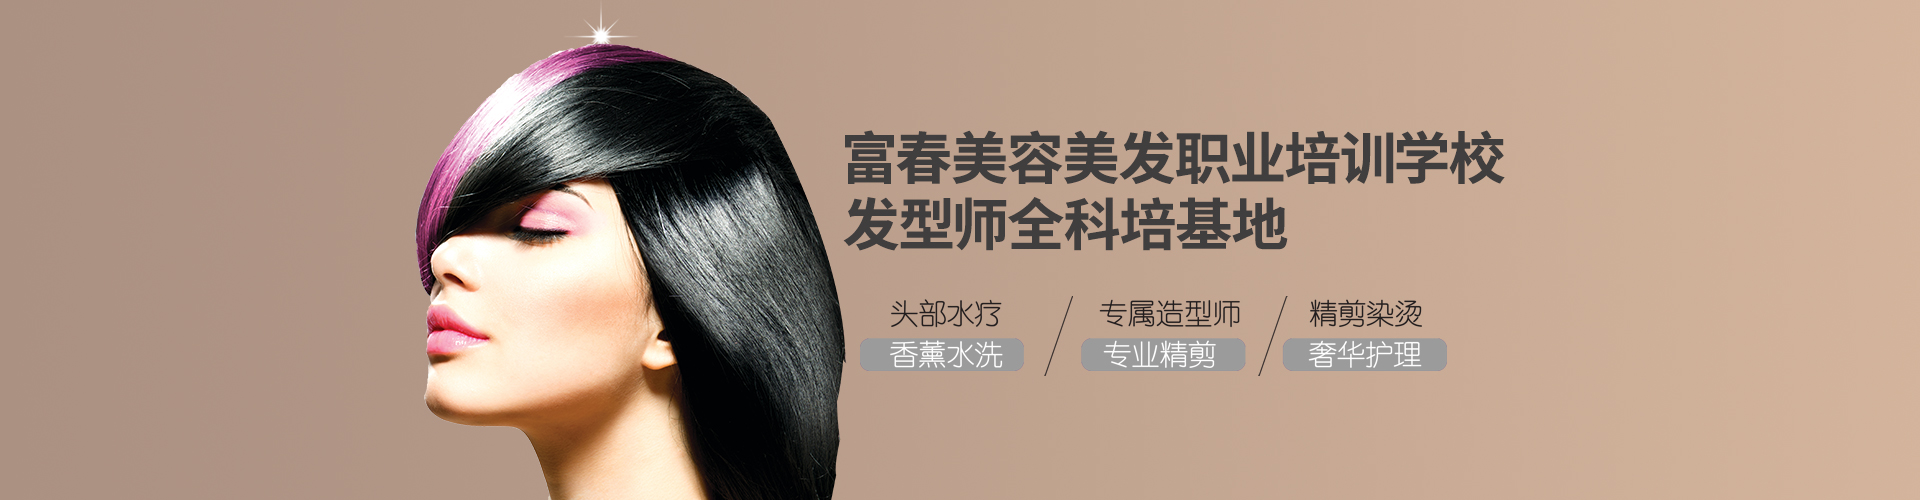 民政局-蚌埠市美容美发行业协会-蚌埠美容美发-蚌埠美发协会